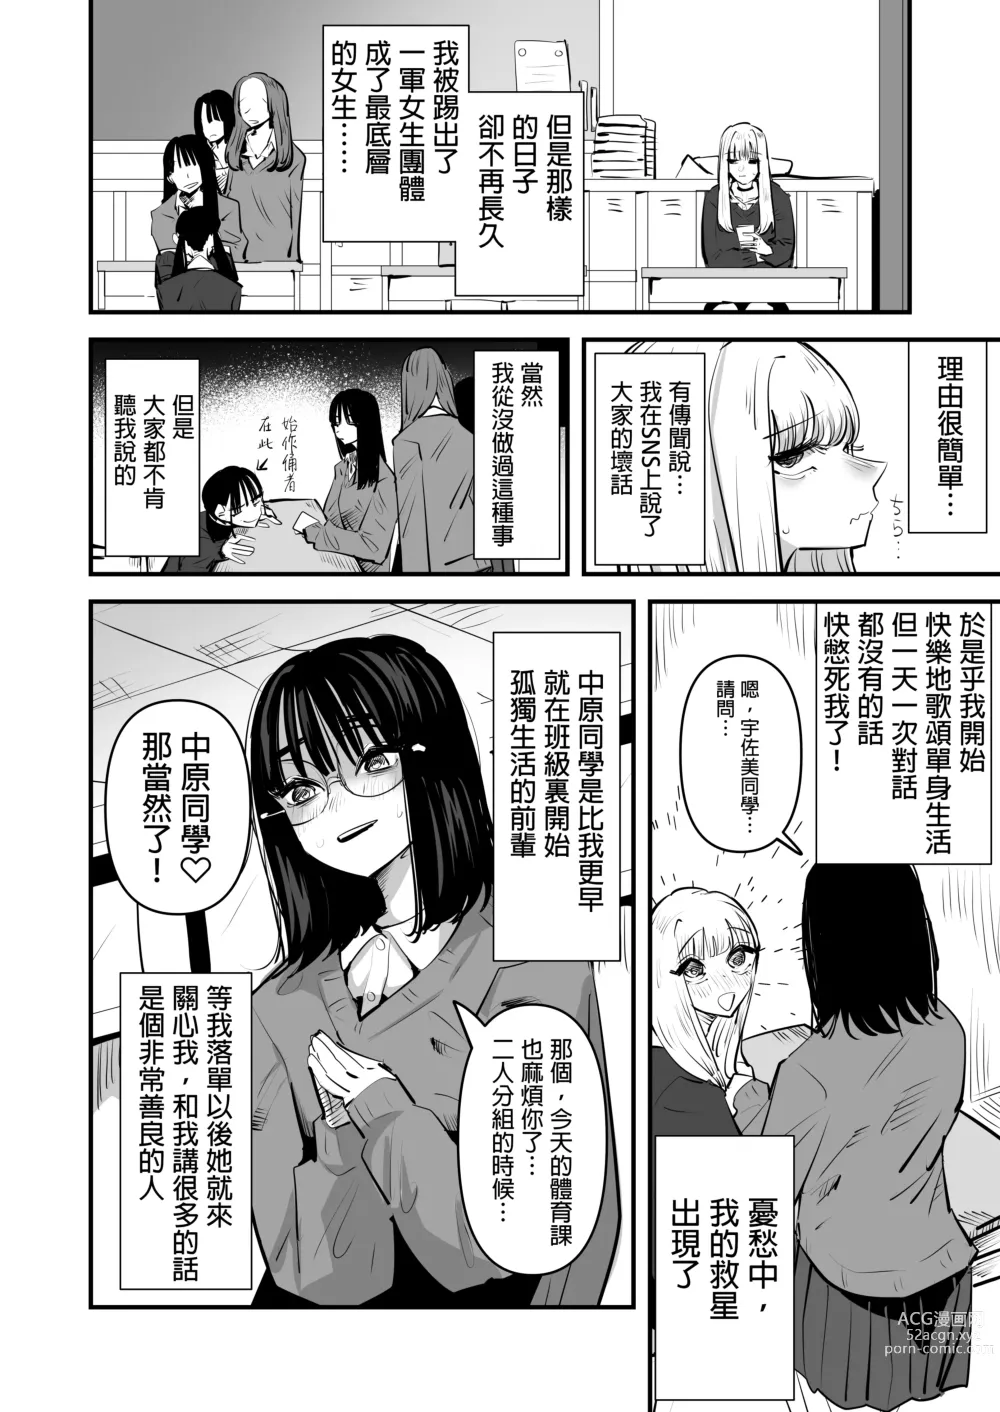 Page 5 of doujinshi 想強上別人的陰暗角色與想被上的活潑角色